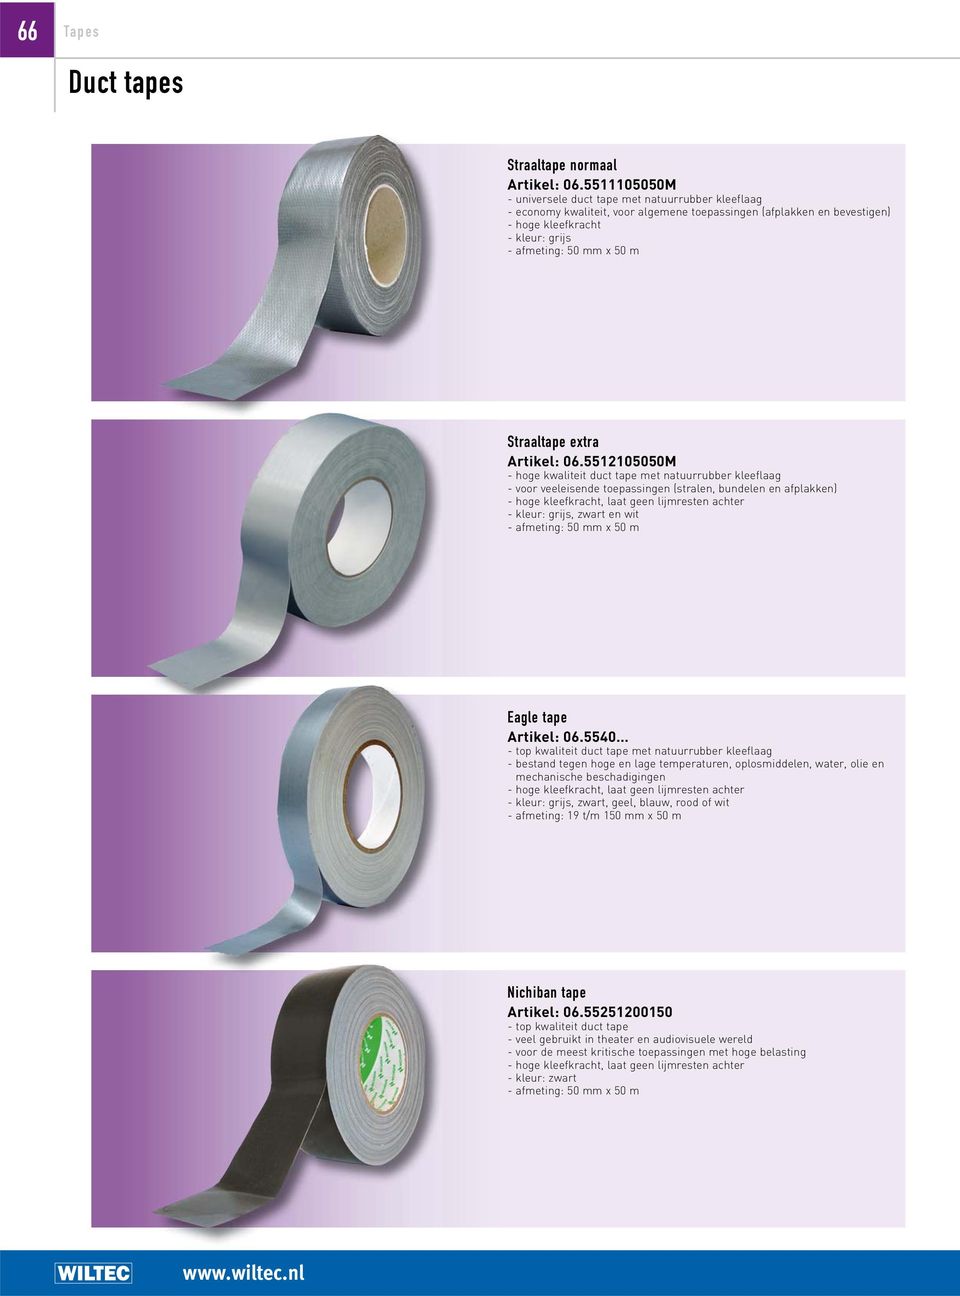 5512105050M - hoge kwaliteit duct tape met natuurrubber kleeflaag - voor veeleisende toepassingen (stralen, bundelen en afplakken) - hoge kleefkracht, laat geen lijmresten achter - kleur: grijs,